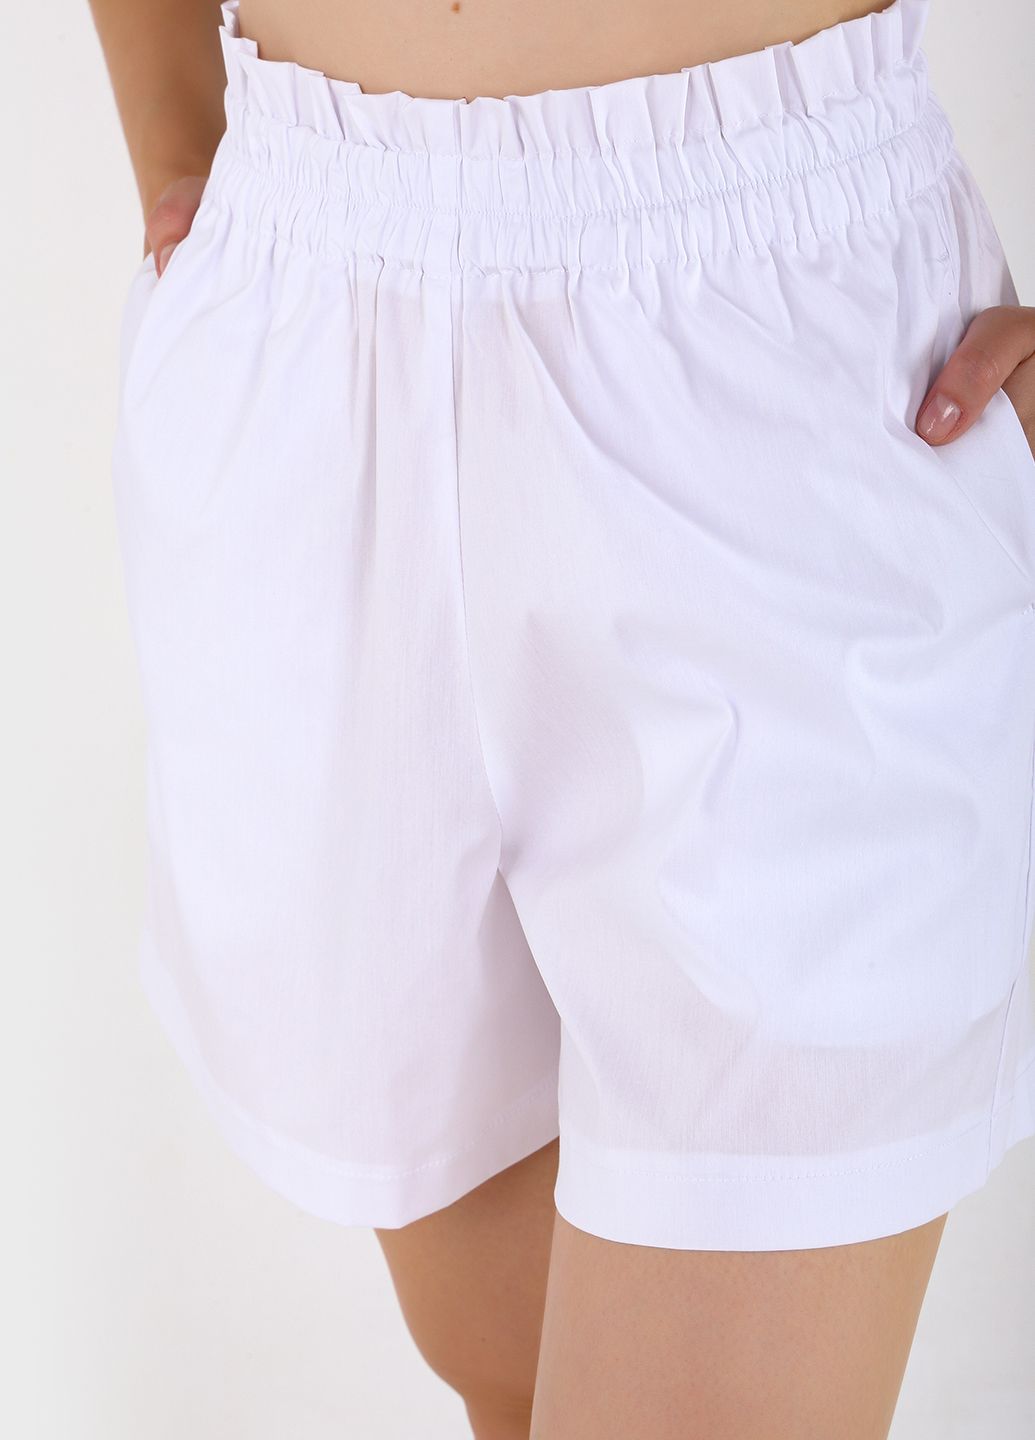 Купить Оверсайз хлопковая футболка женская белого цвета Merlini Ливорно 800000041, размер 42-44 в интернет-магазине